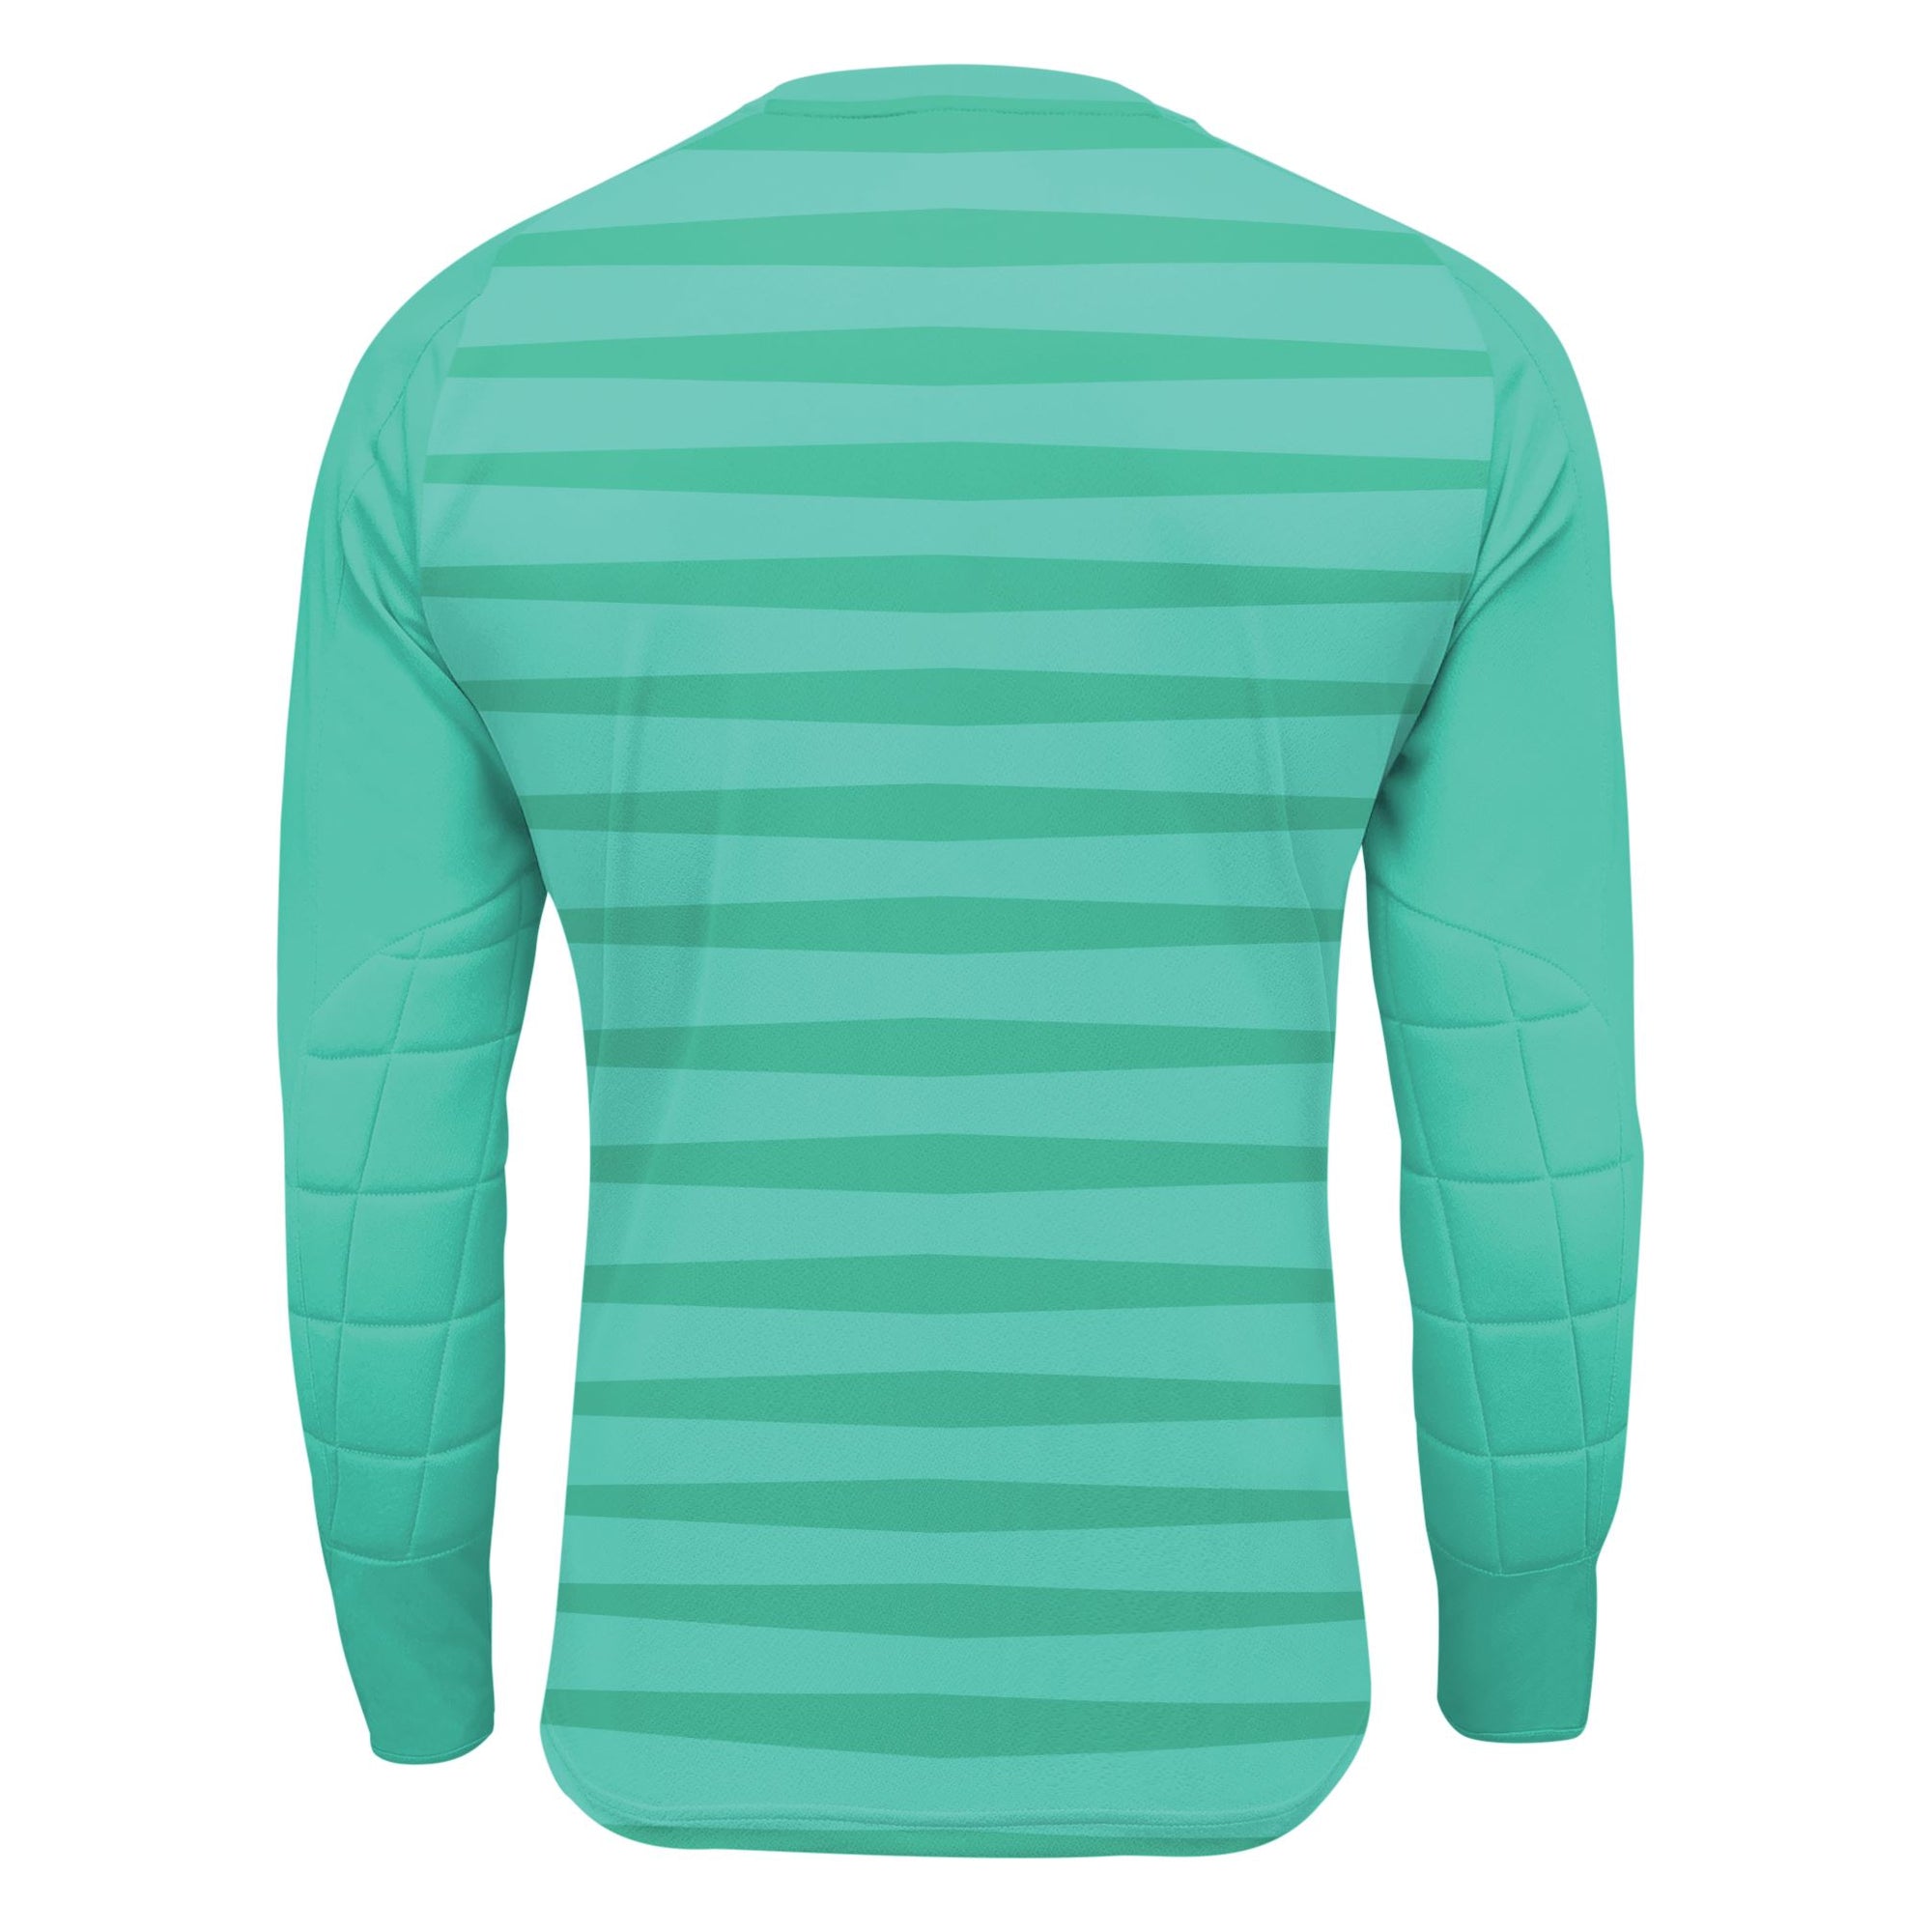 Hillford Goal Keeper Shirt - Unisex Shirt Xara Soccer 